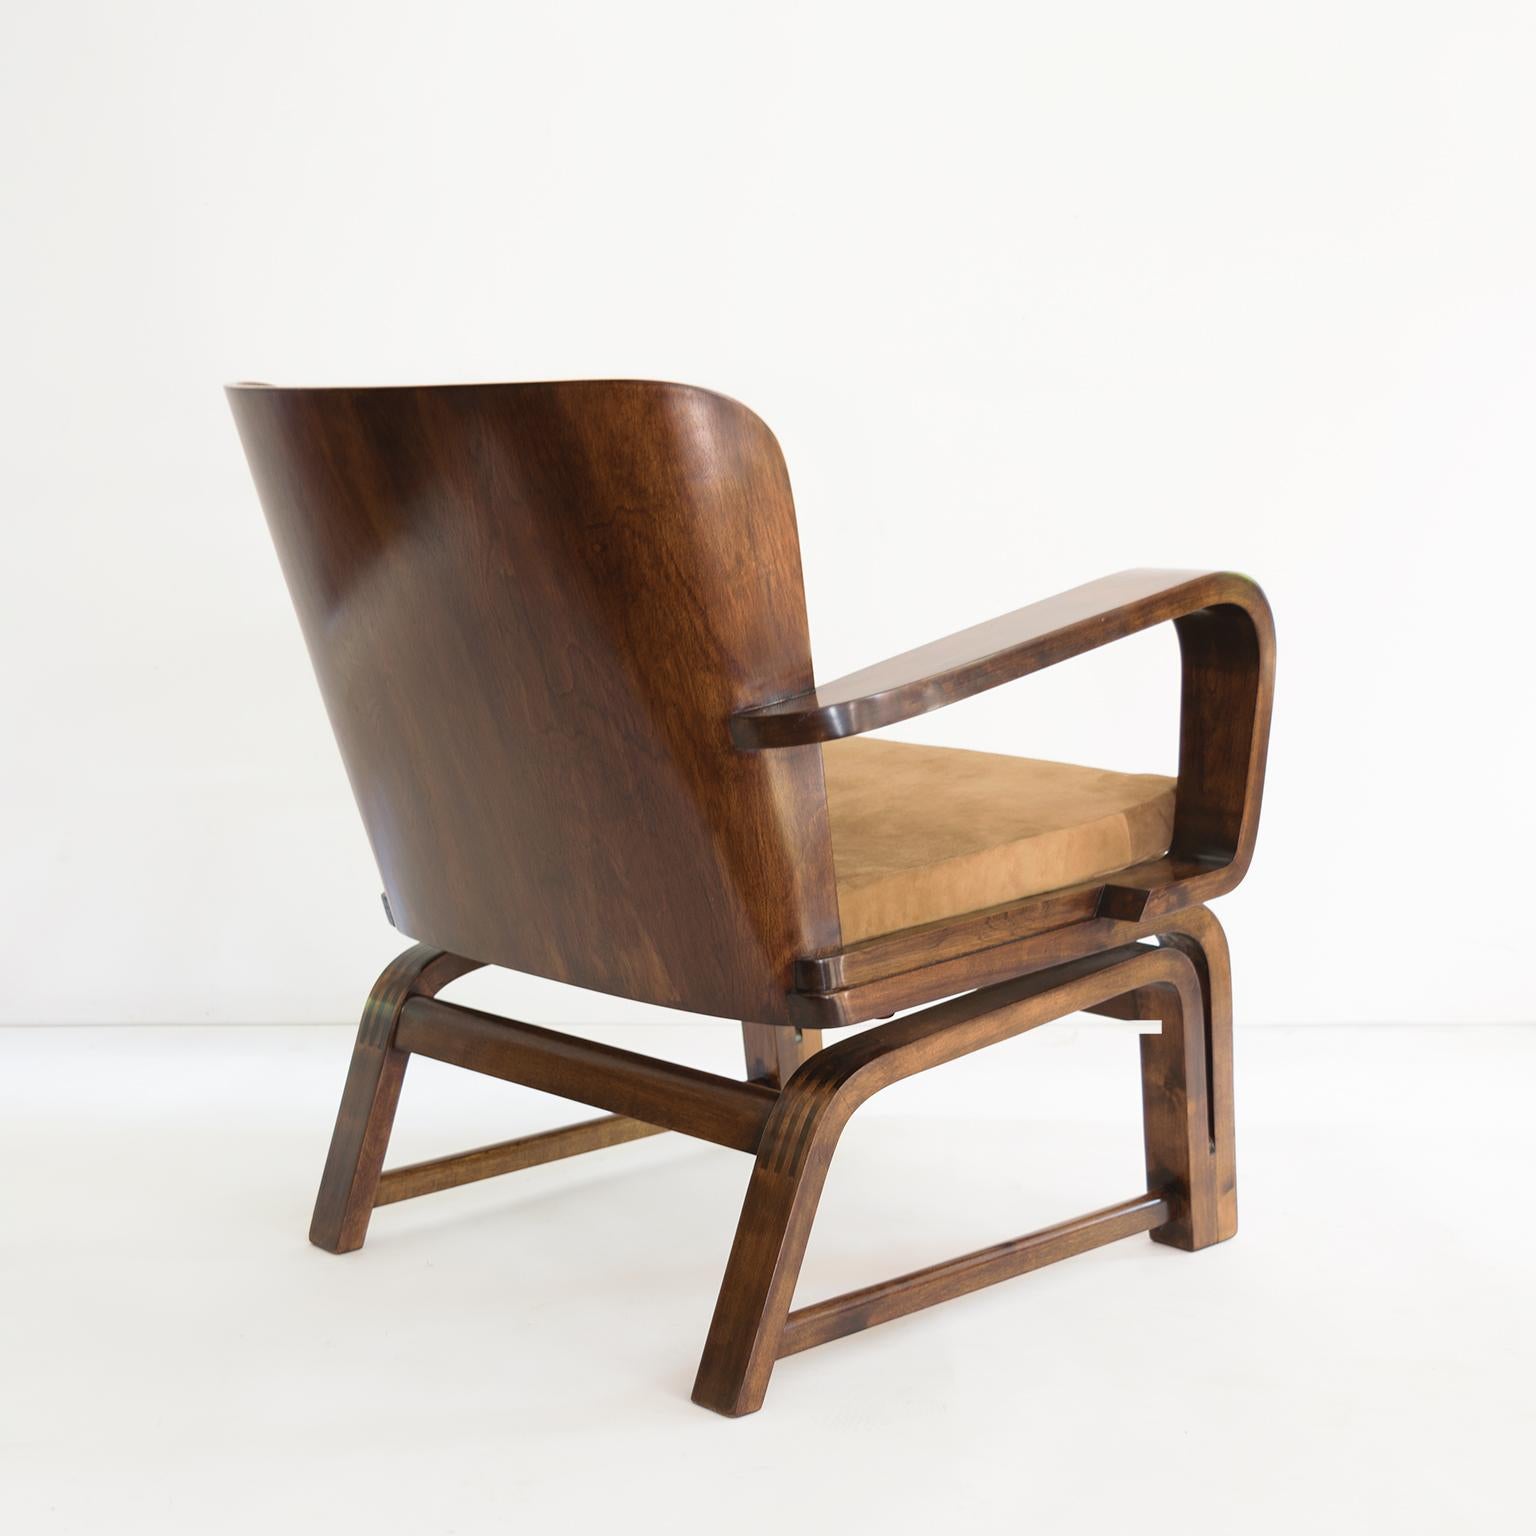 Daim Exceptionnelle « chaise exceptionnelle » de Carl-Johan Bowman, vers 1930, fabriquée pour N. Bomanin en vente